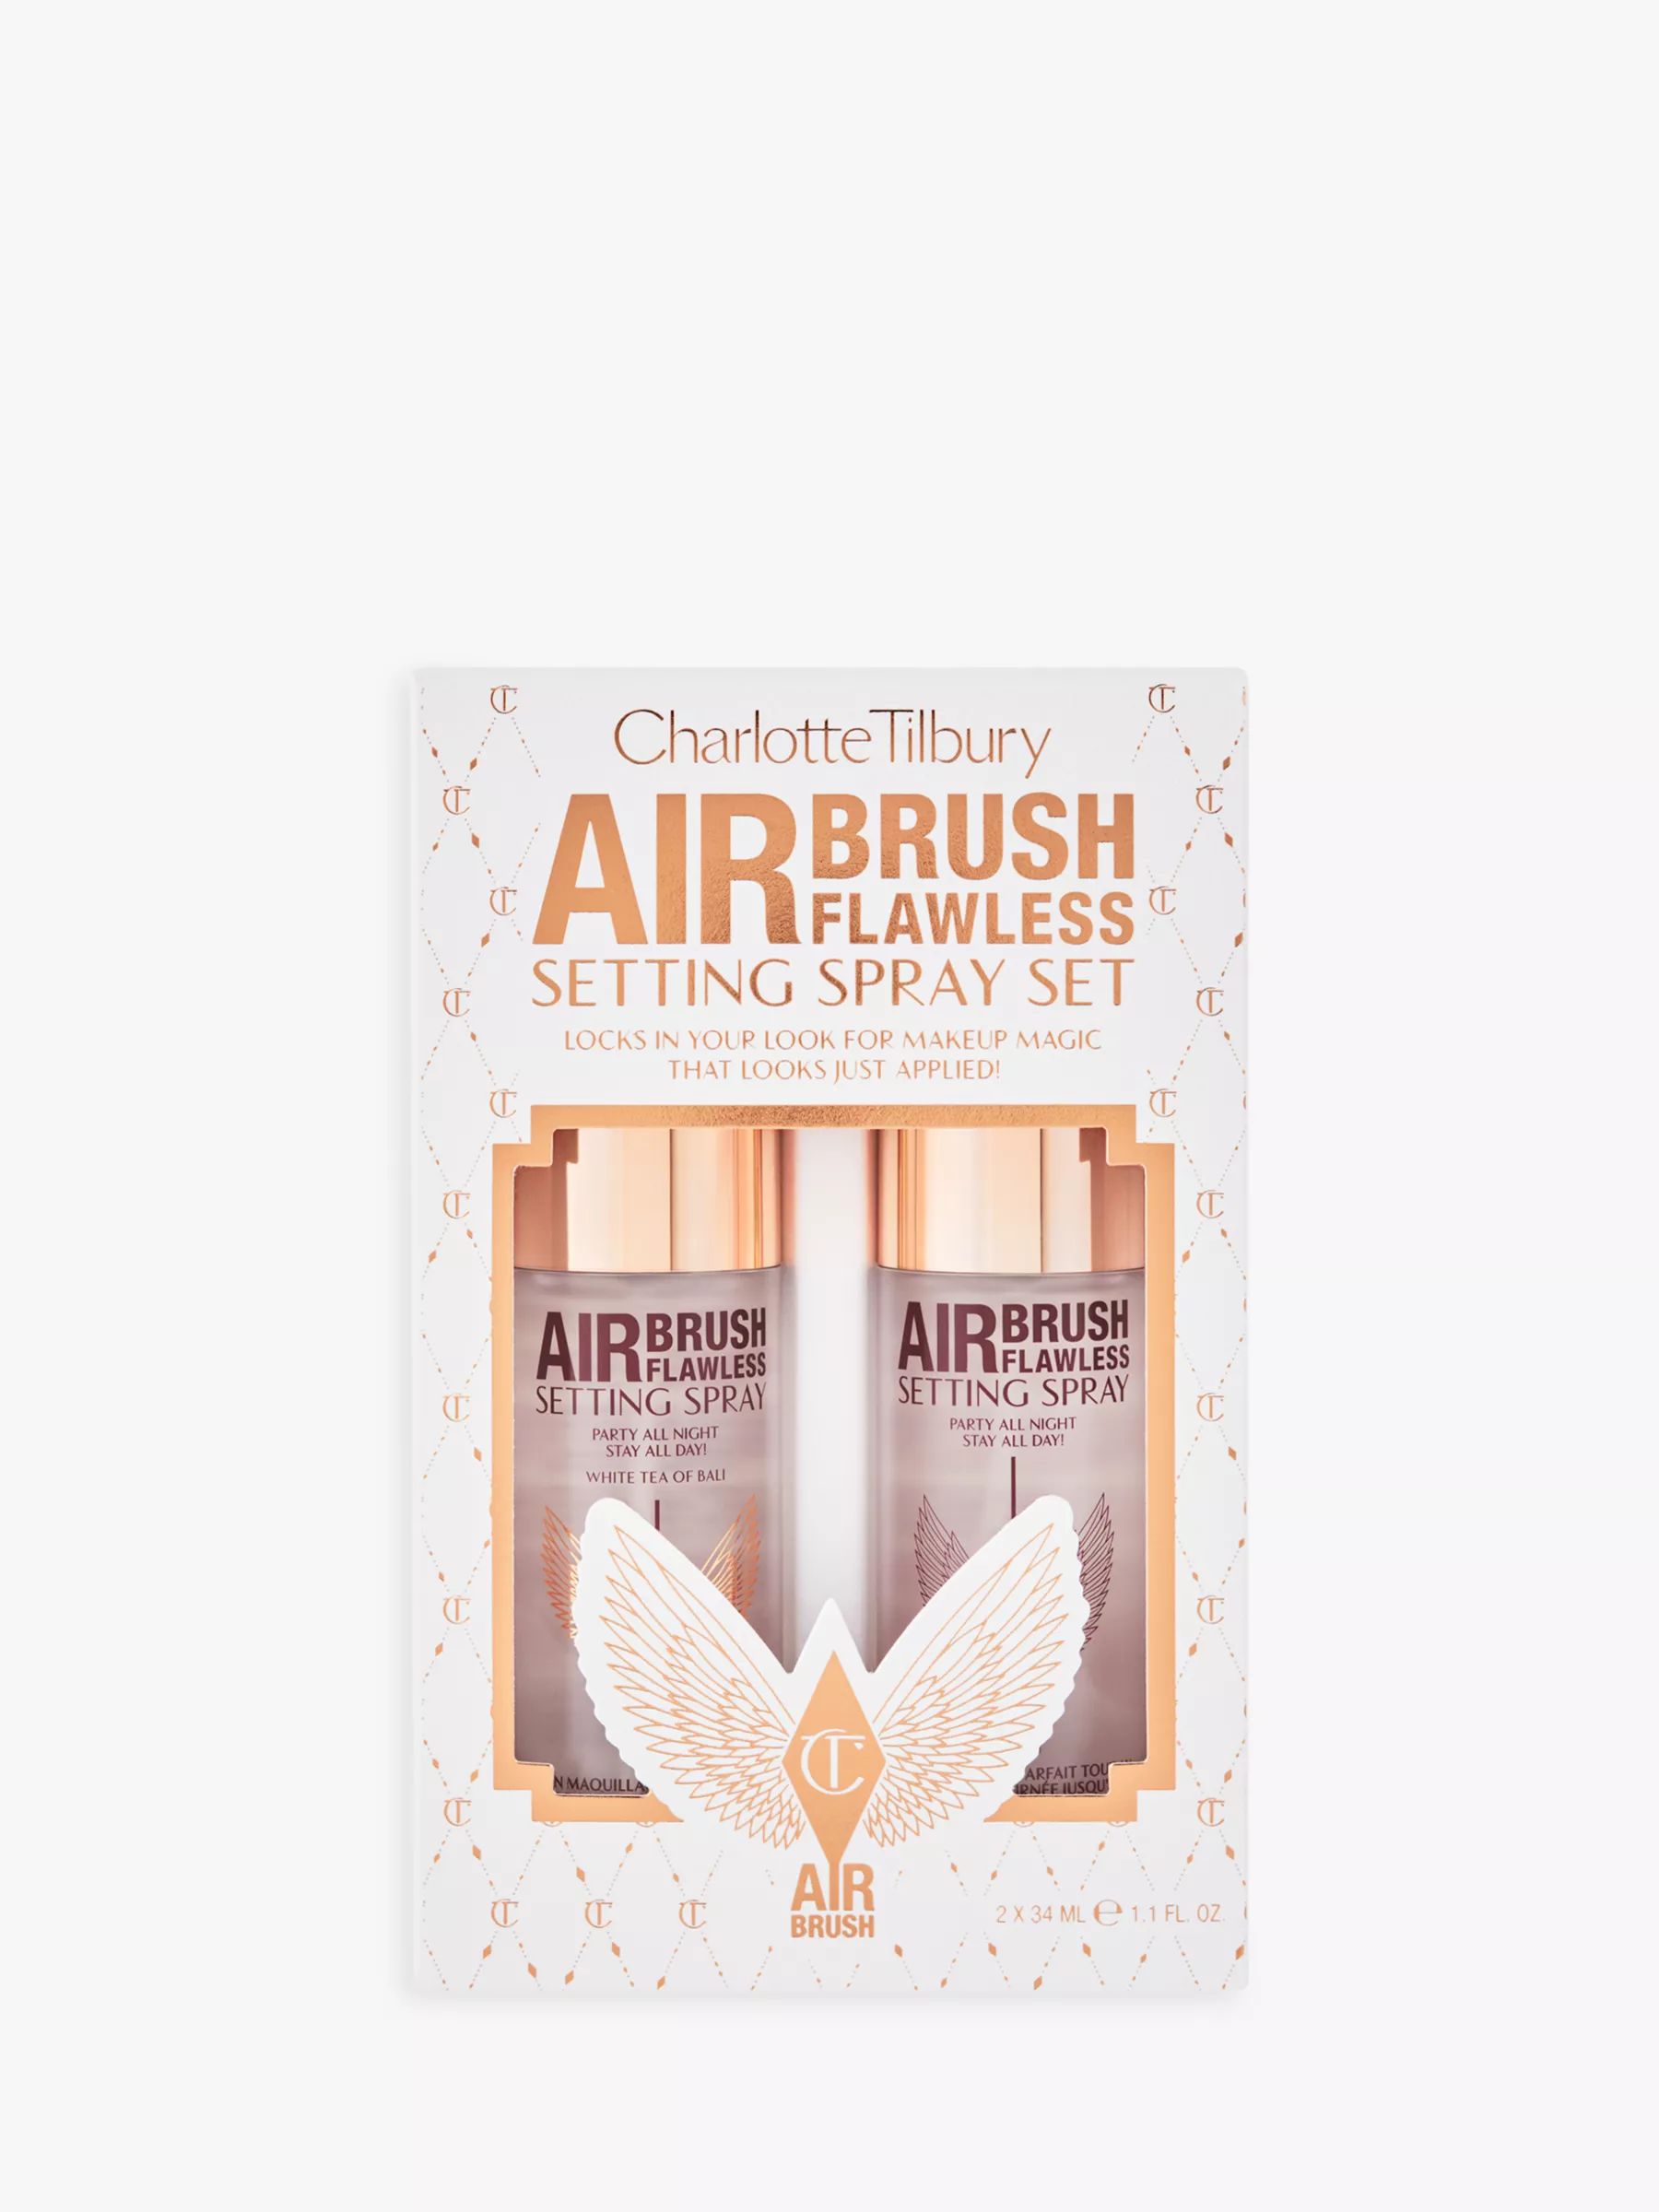 Charlotte Tilbury Airbrush Flawless Setting Spray Makeup Gift Set | John Lewis (UK)